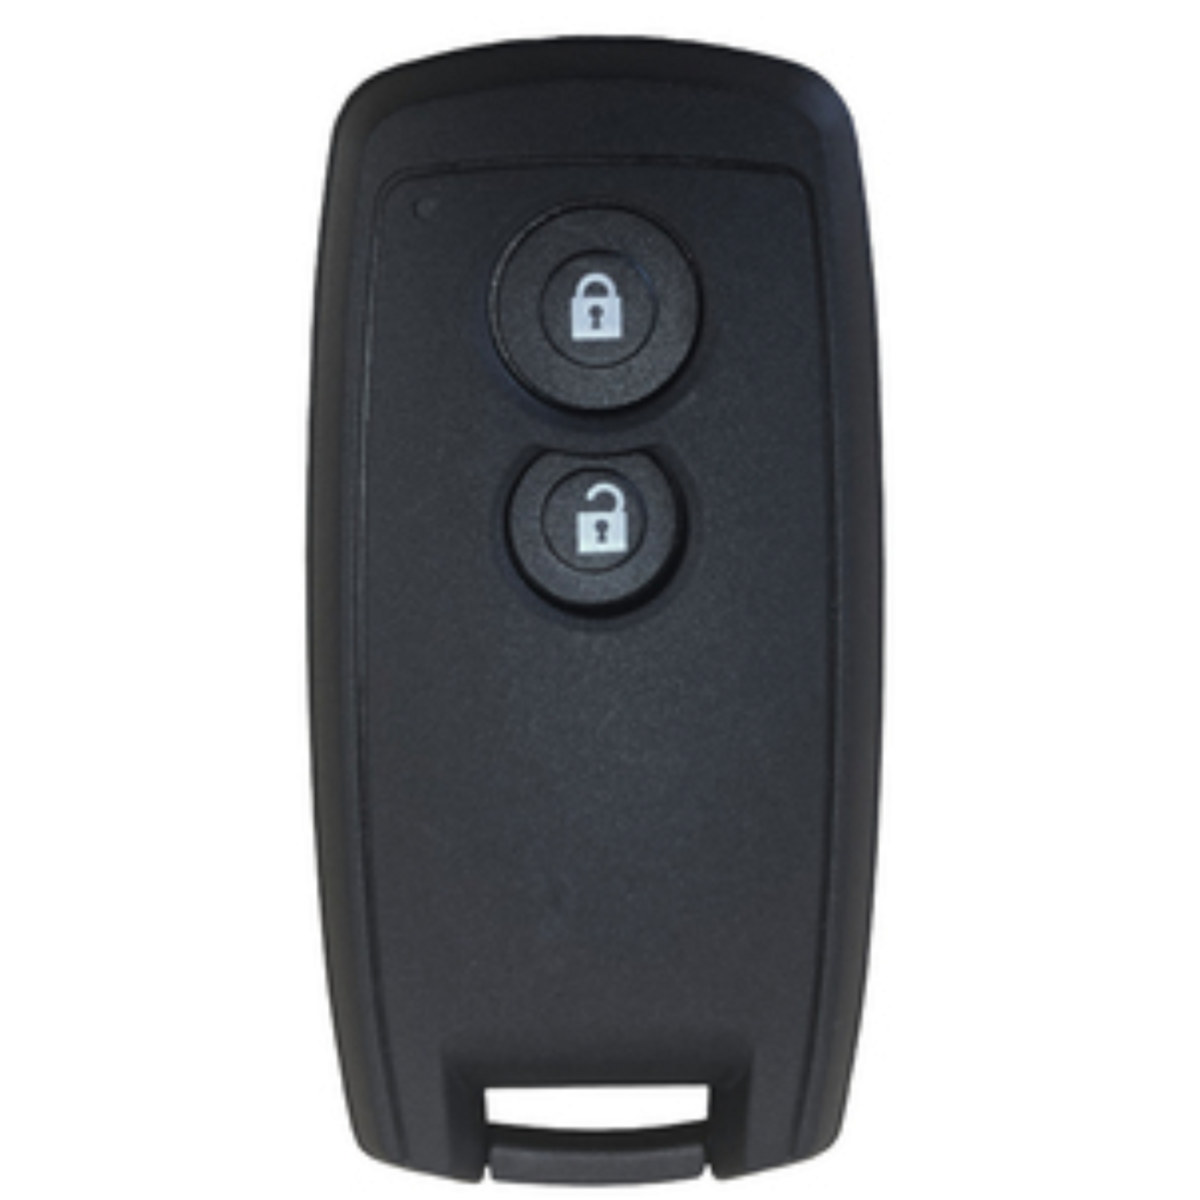 Genuine Smart key remote 2 button to suit Suzuki (Black Prox) 433Mhz FSK